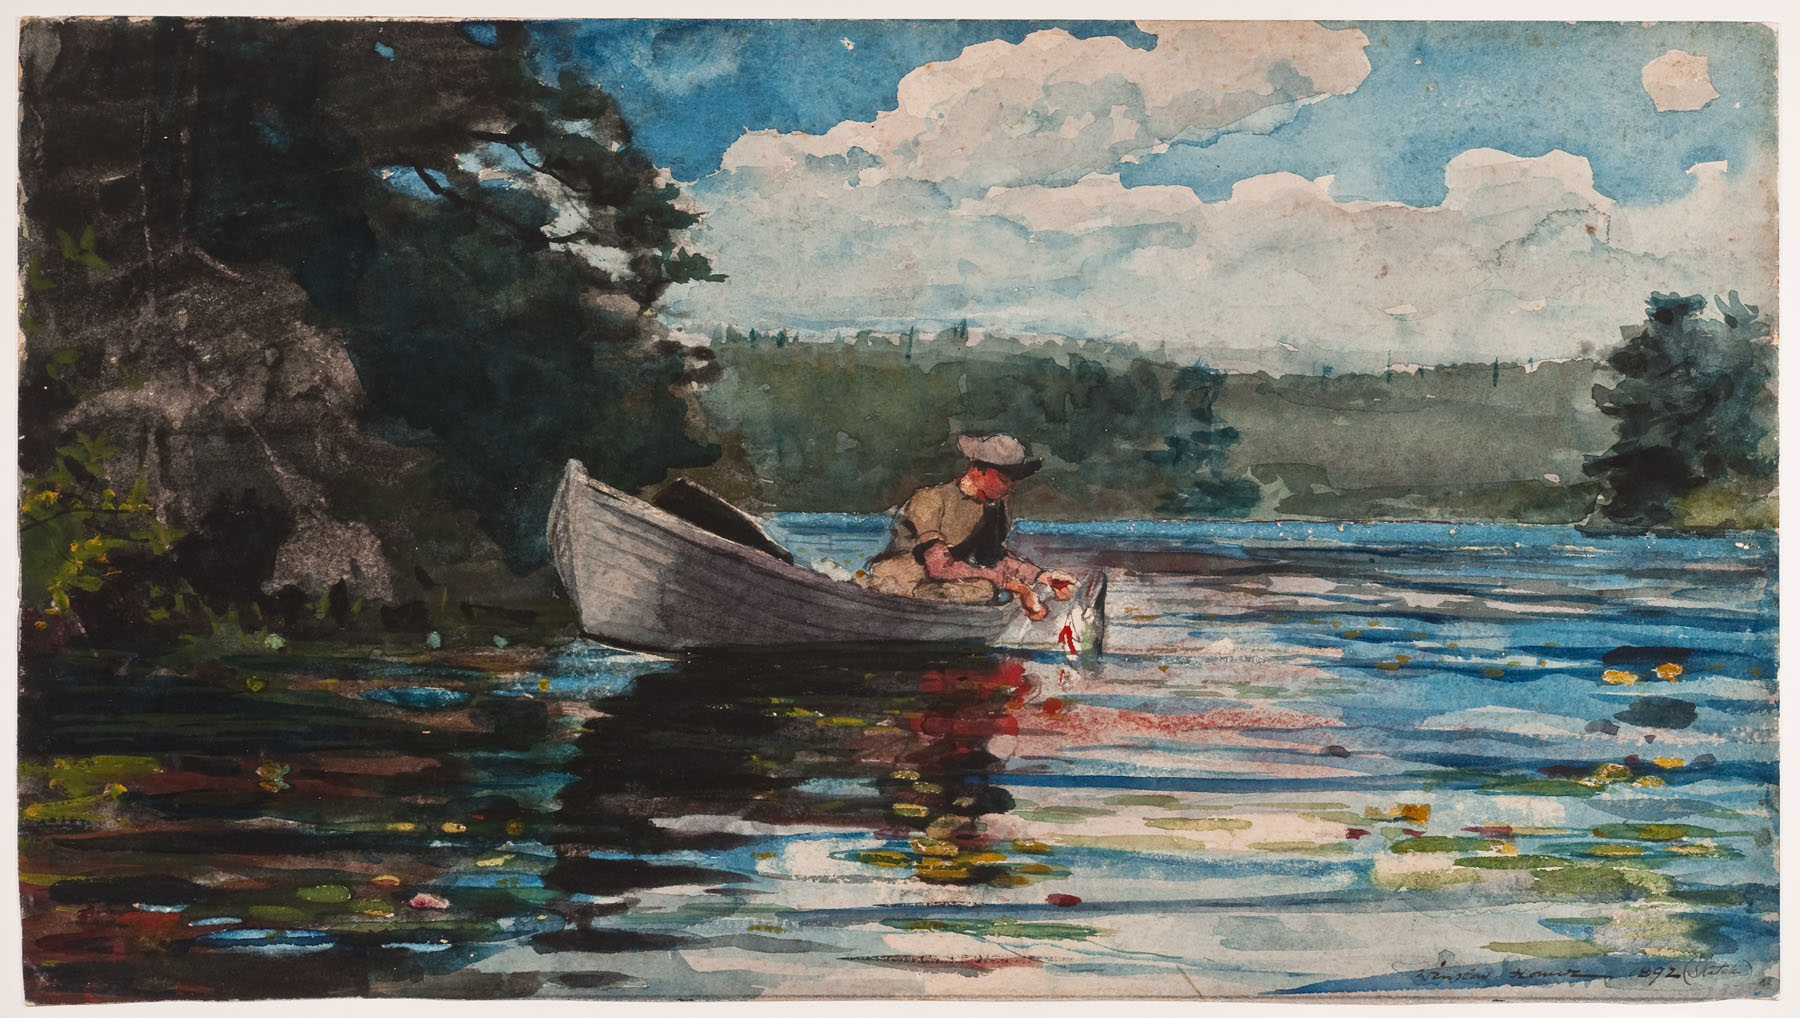 fishing day - an original lake painting